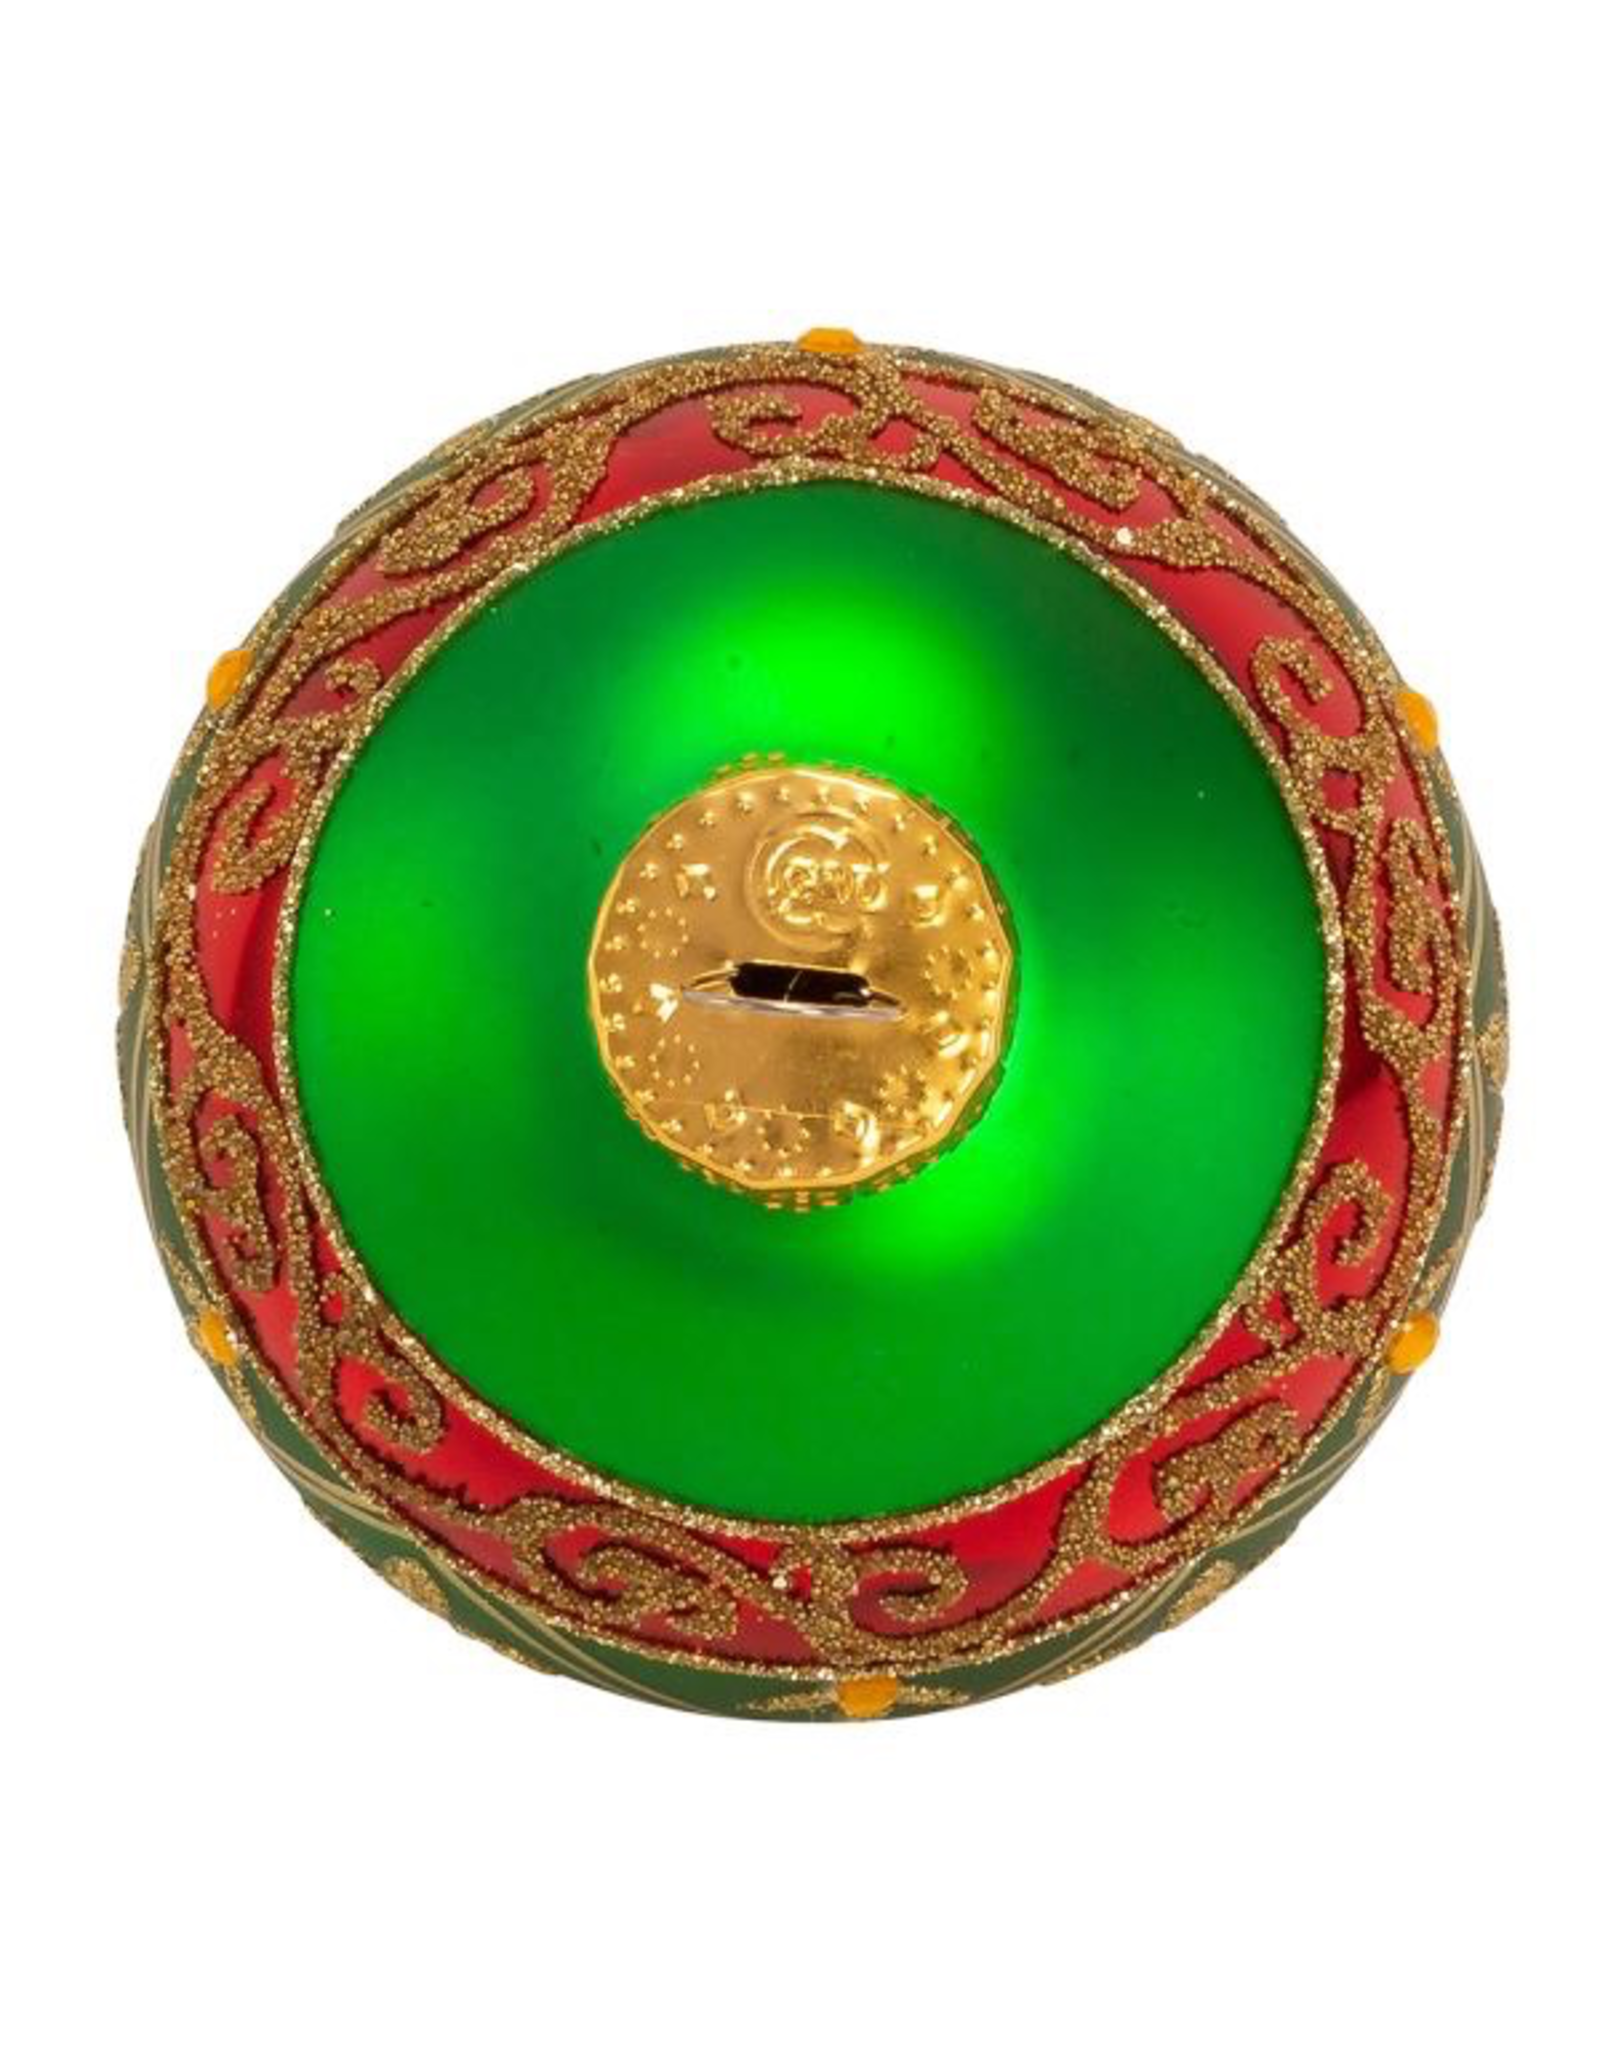 Kurt Adler Fleur-De-Lis Red Gold Green Glass Ball Ornaments Set of 6